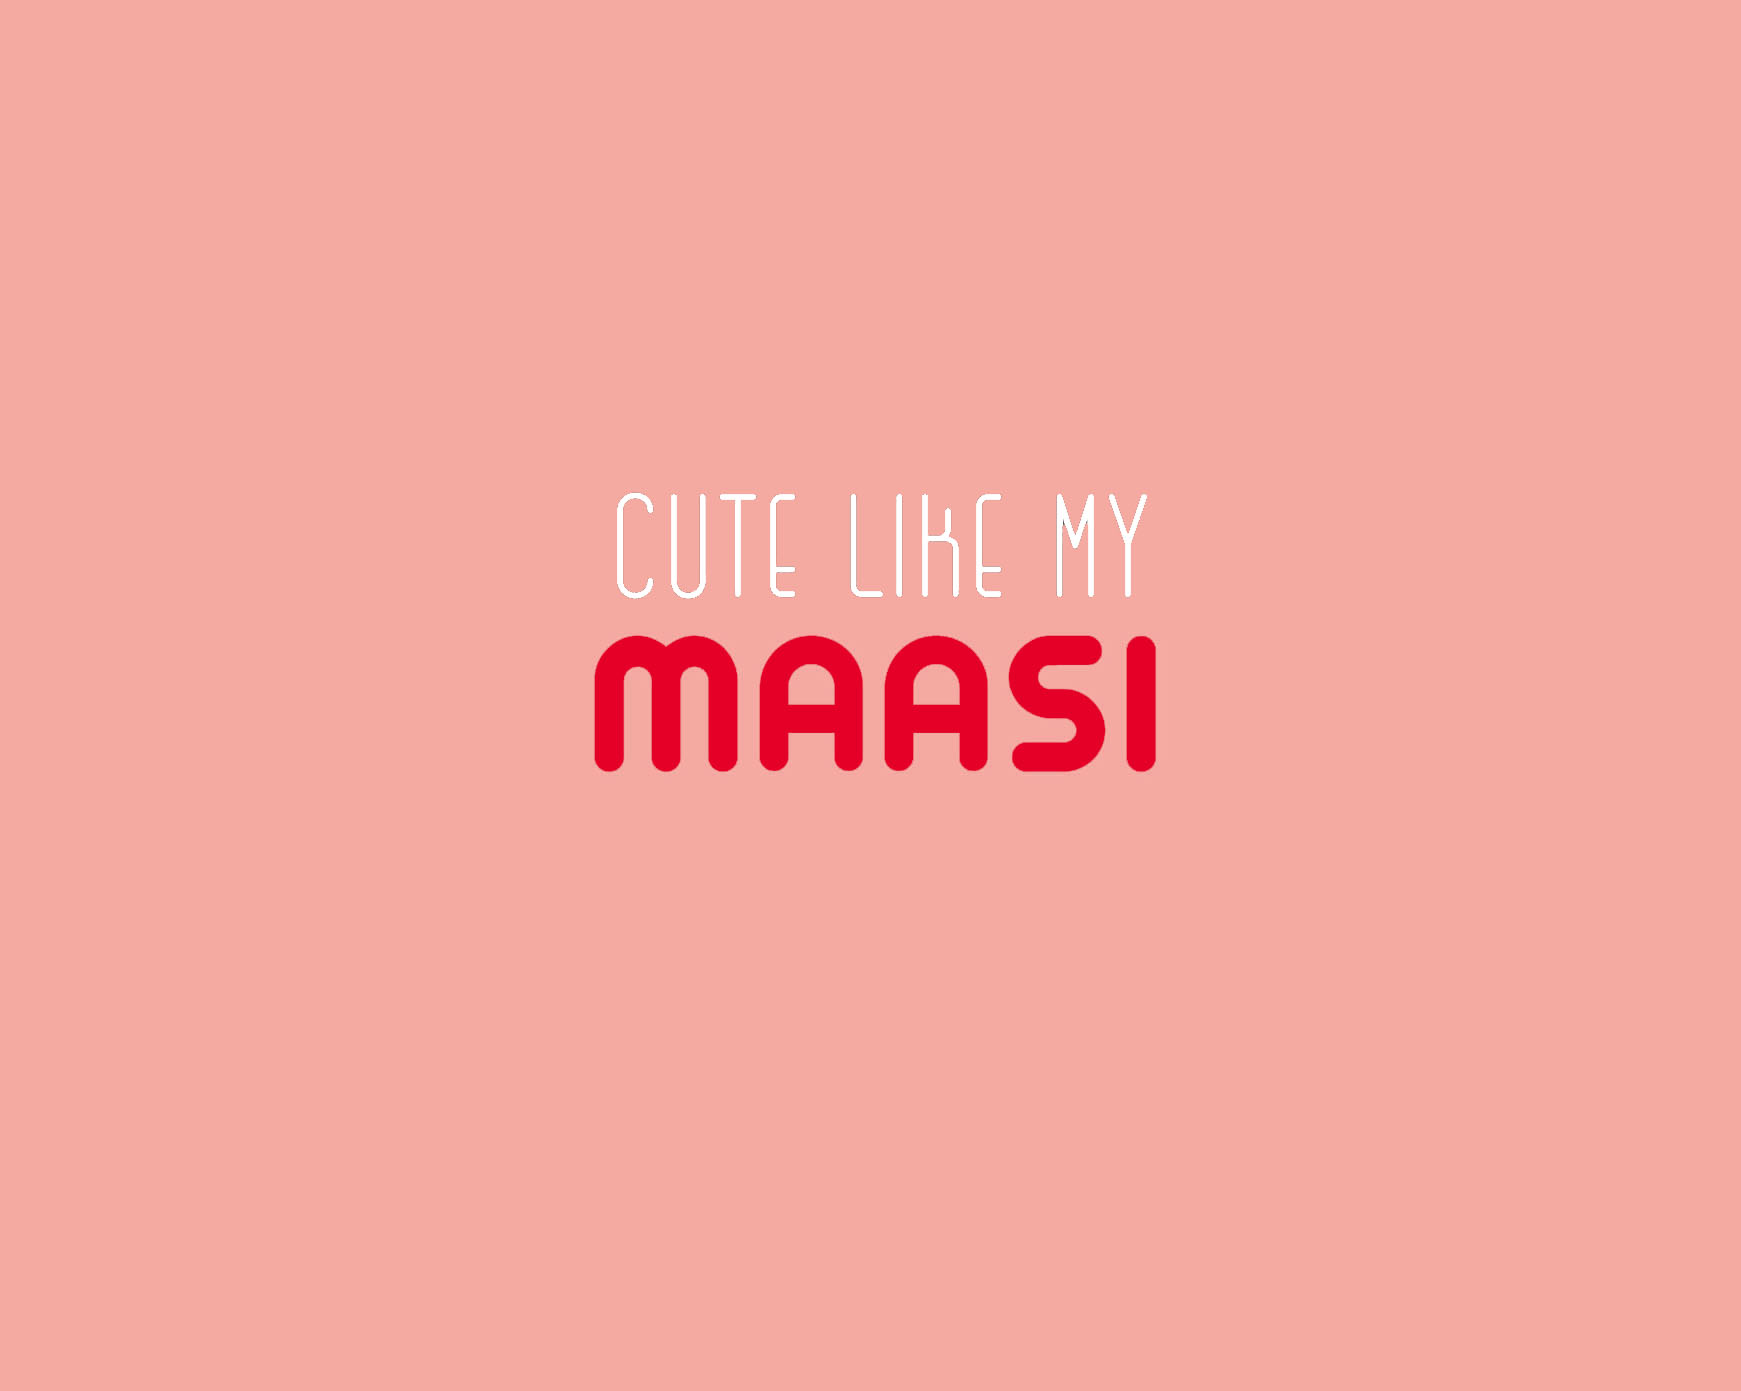 Cute-like-maasi-pink.jpg